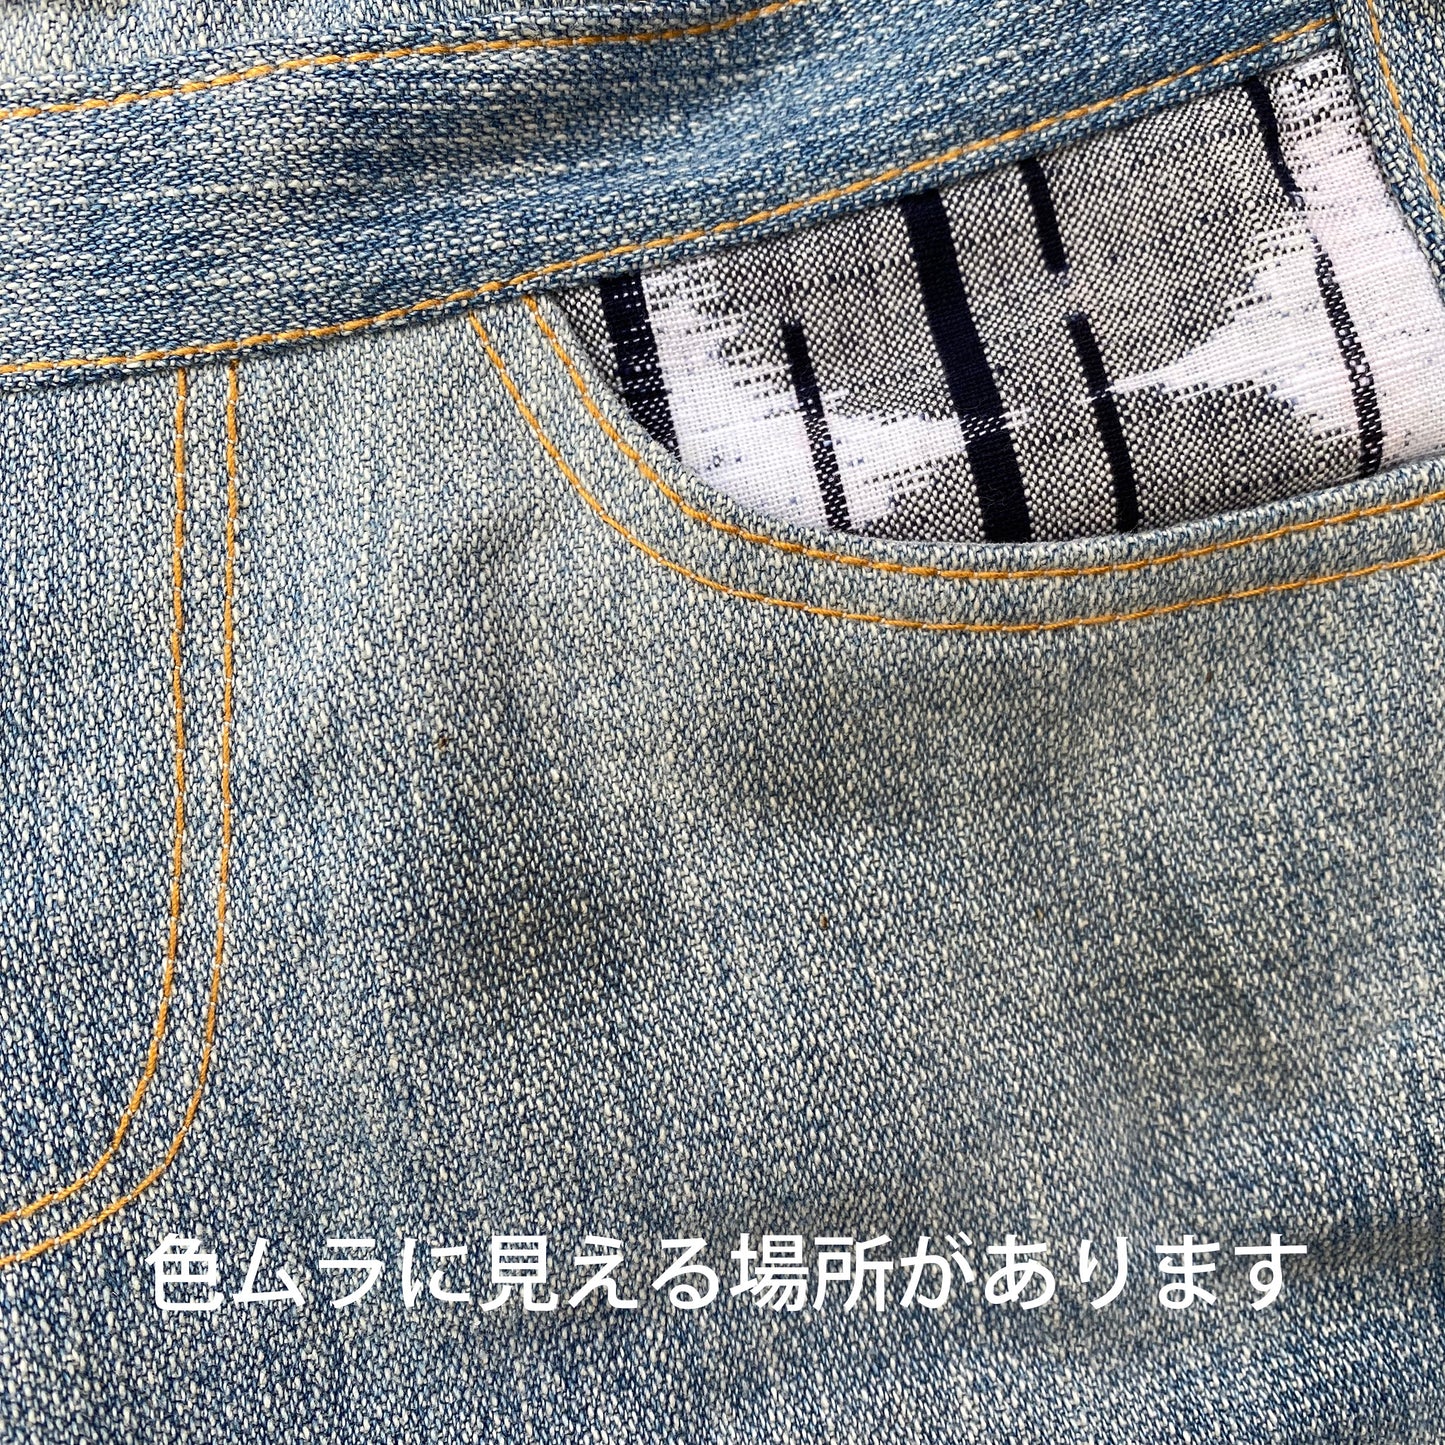 TSUNAGU jumpsuit [005] (Clothes sold separately)